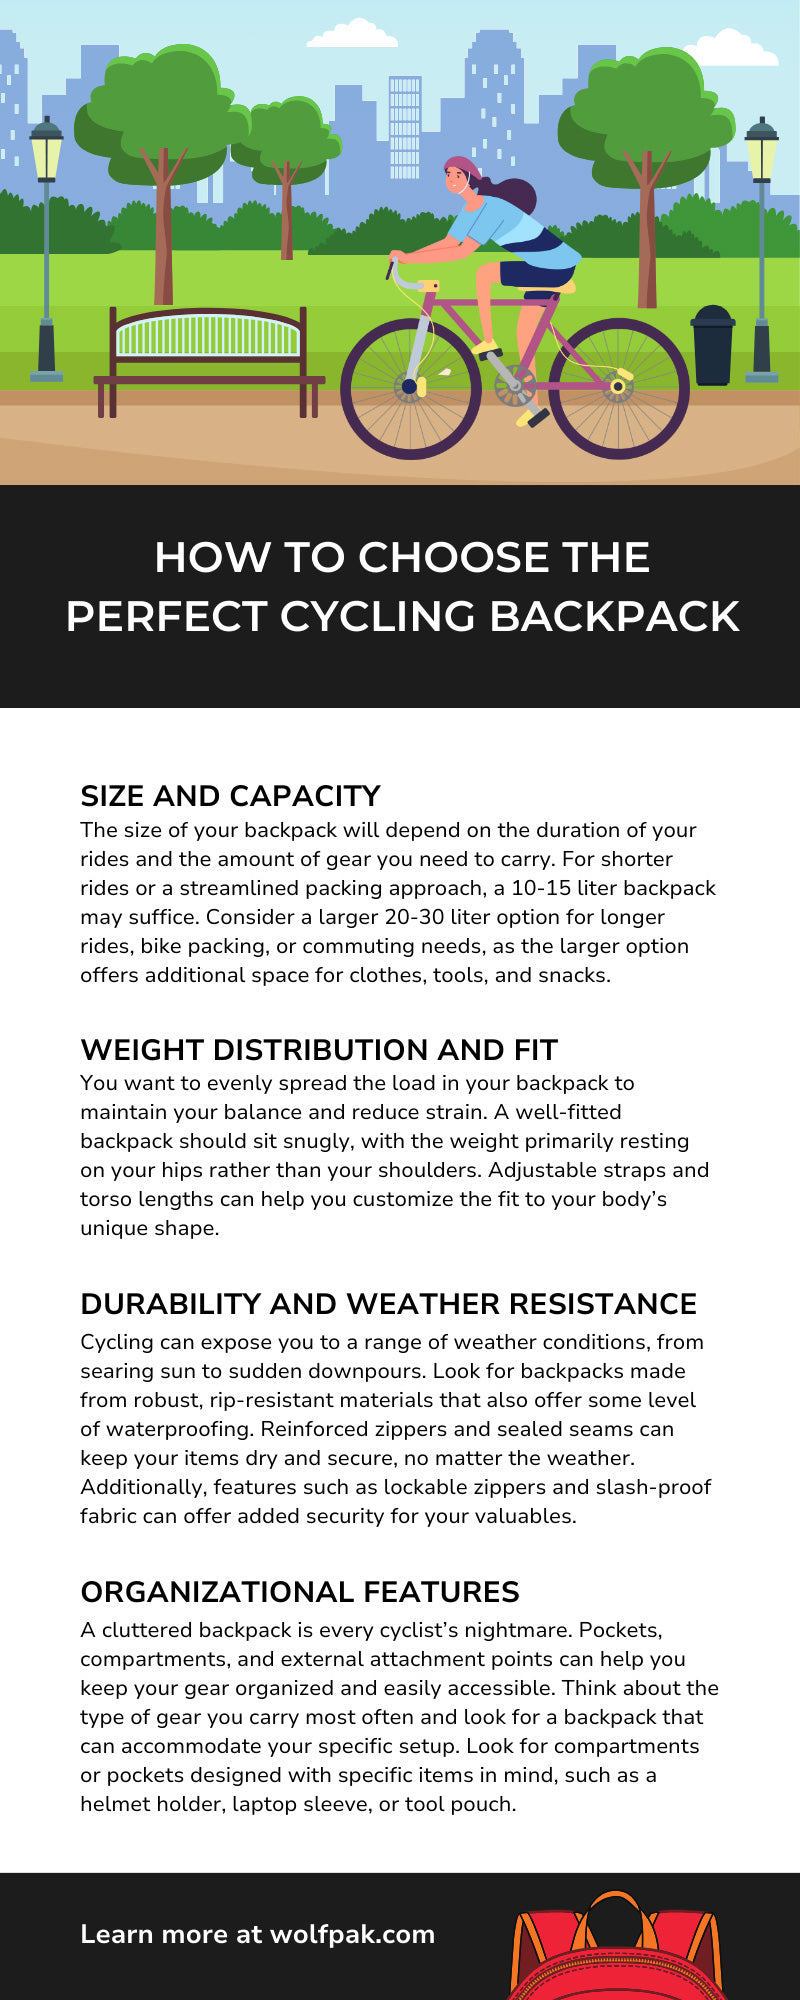 Cómo elegir la mochila ciclista perfecta